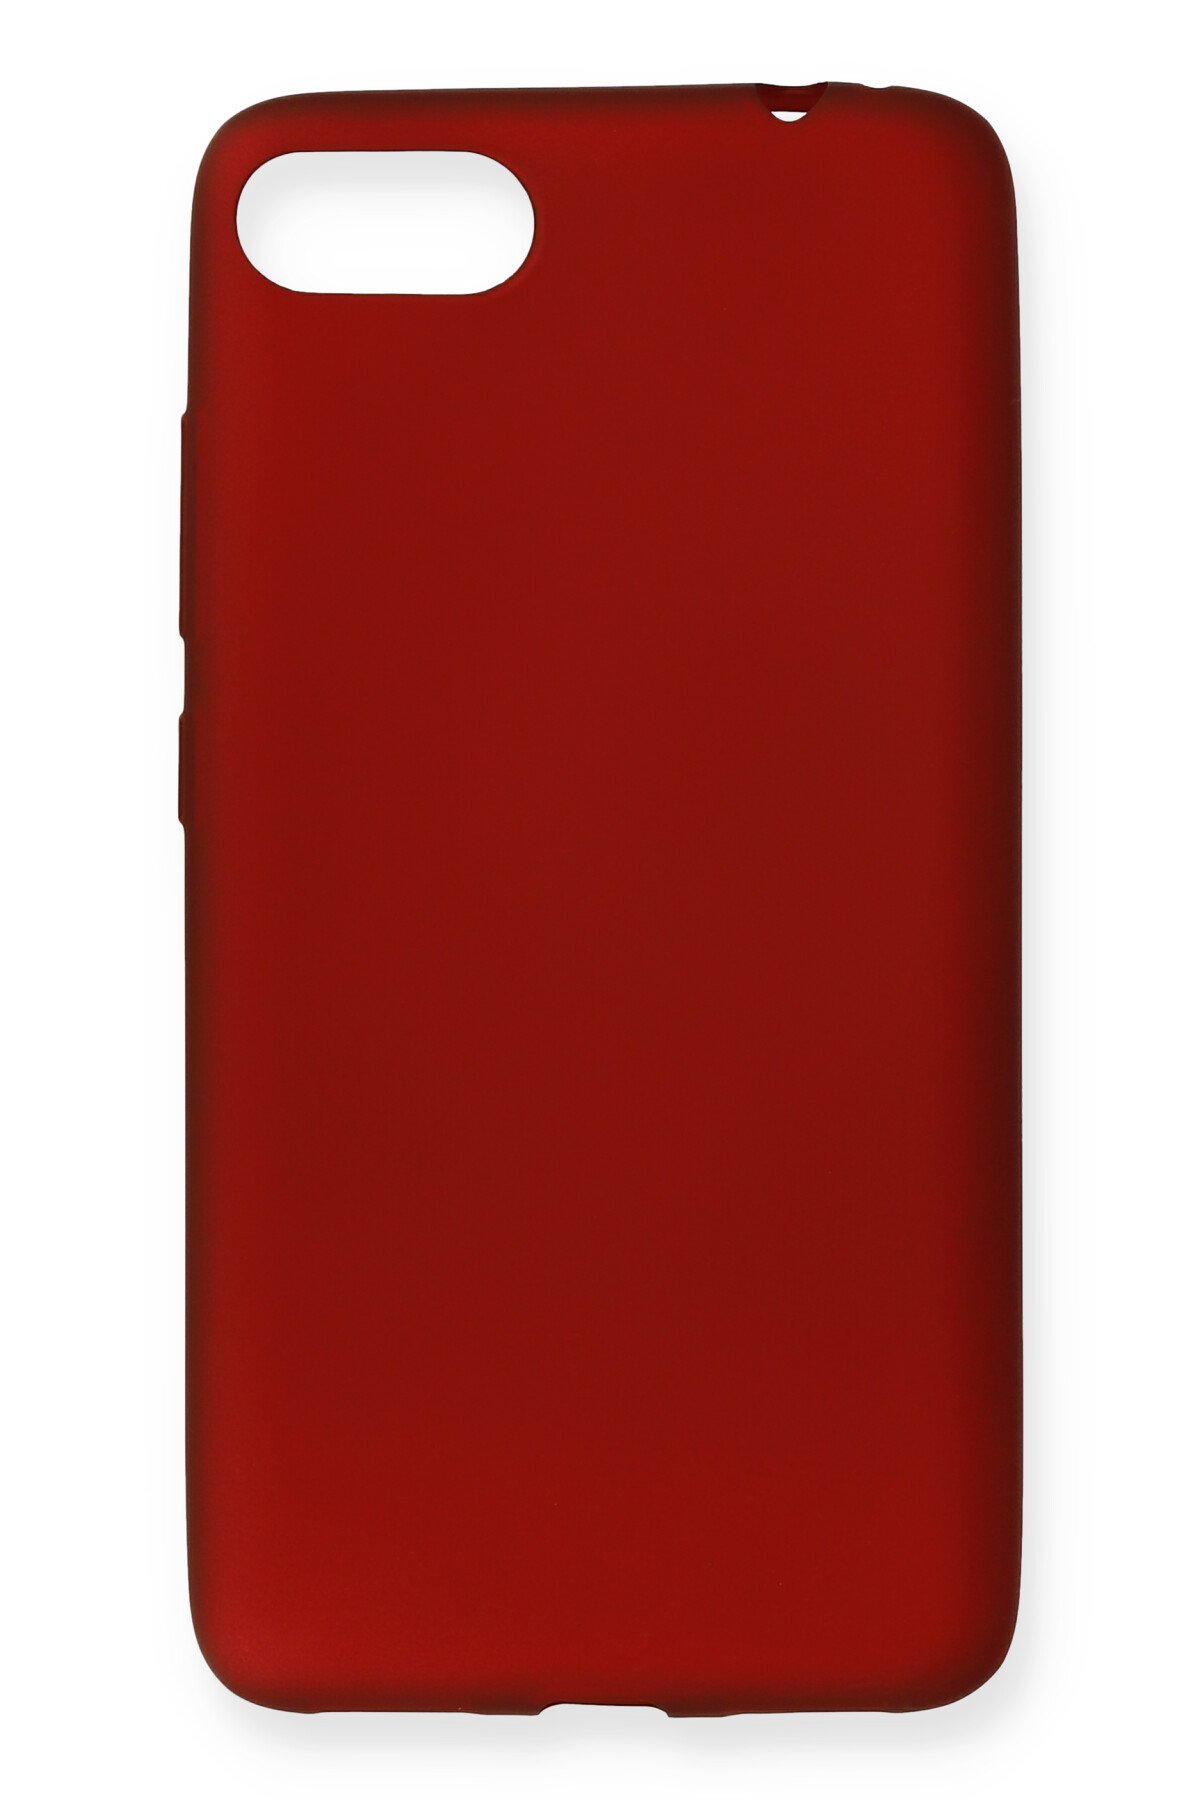 Newface Asus Zenfone 4 Max (zc554kl) Royal Nano Ekran Koruyucu